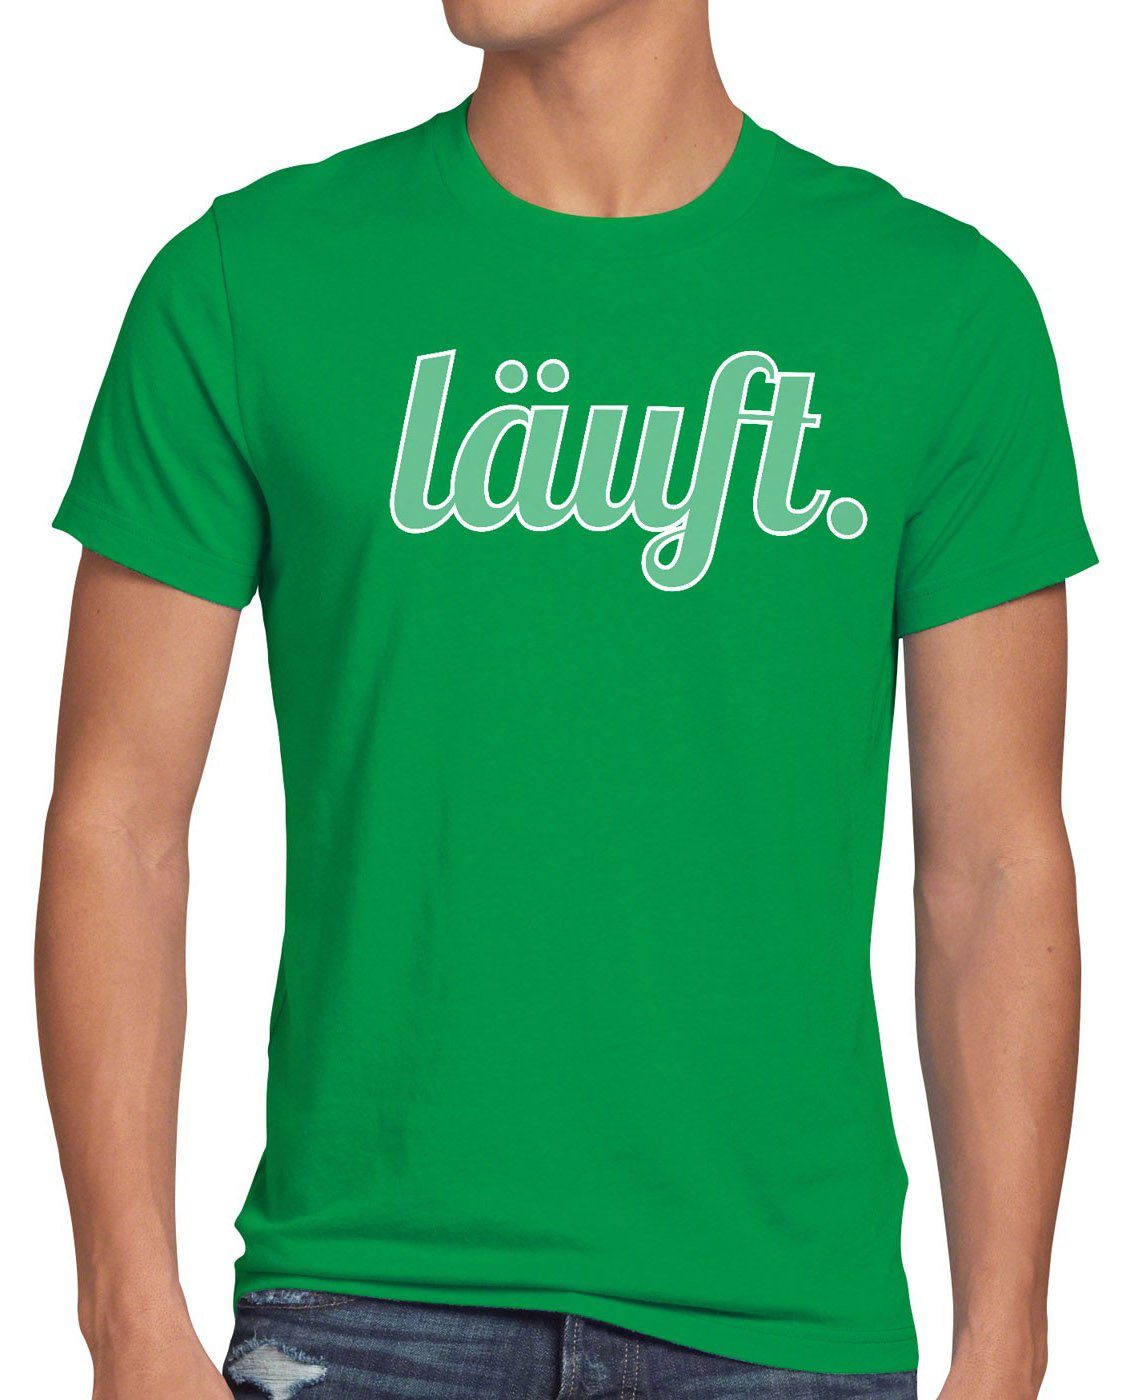 Beachtenswert style3 Print-Shirt Herren T-Shirt meme mir läuft dir kult grün Shirt bei top Fun Funshirt Spruchshirt